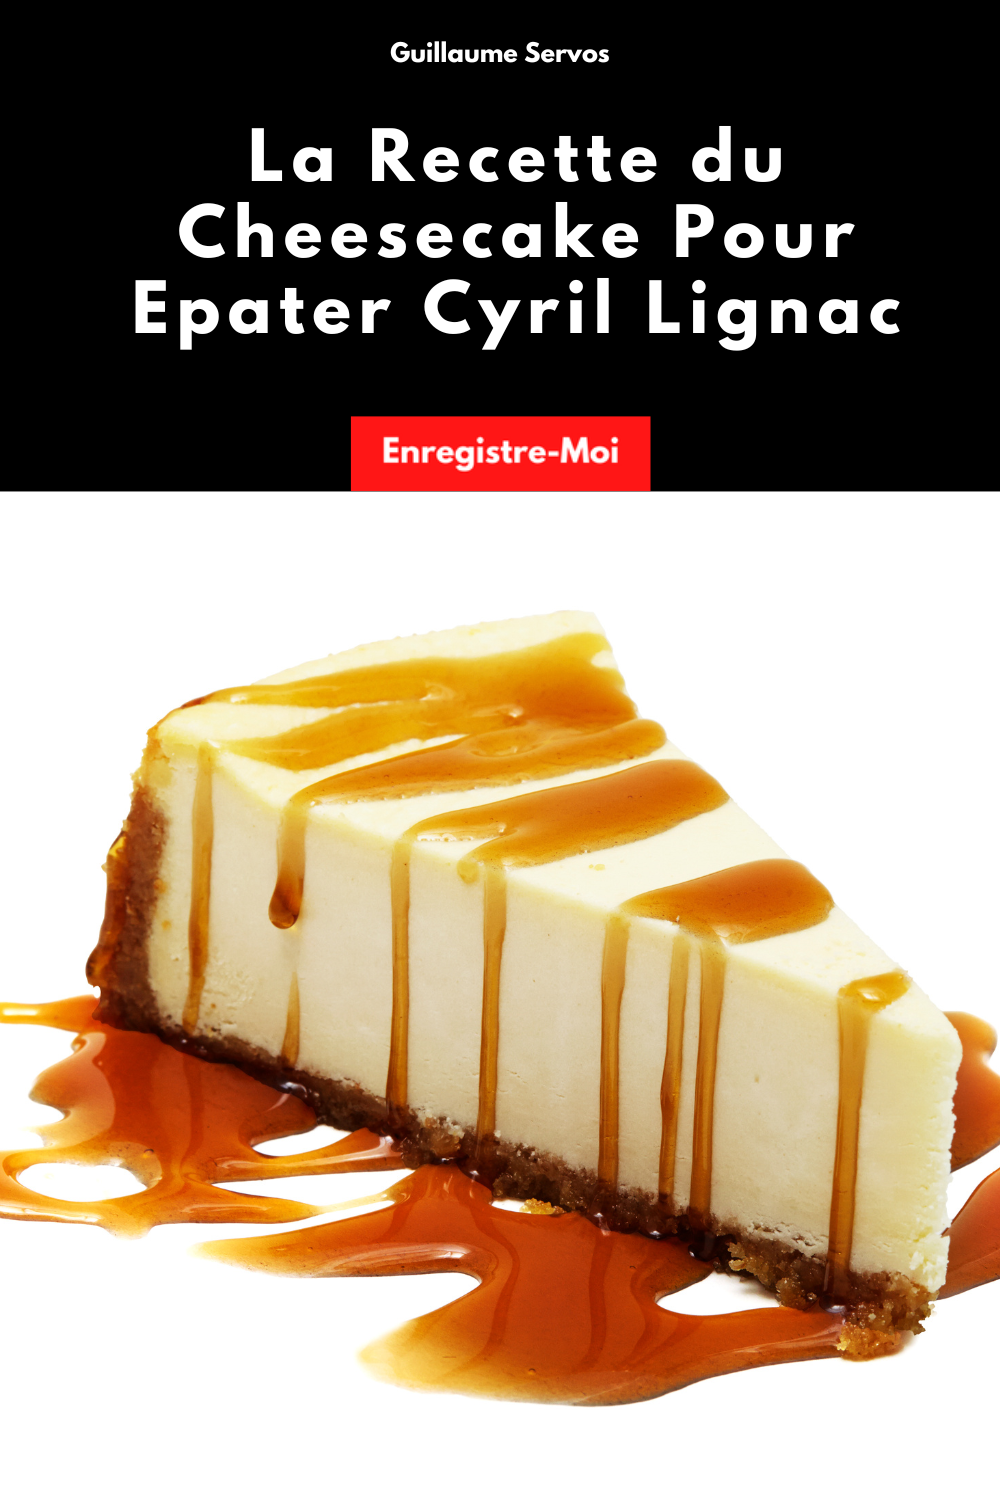 La Recette du Cheesecake Pour Epater Cyril Lignac